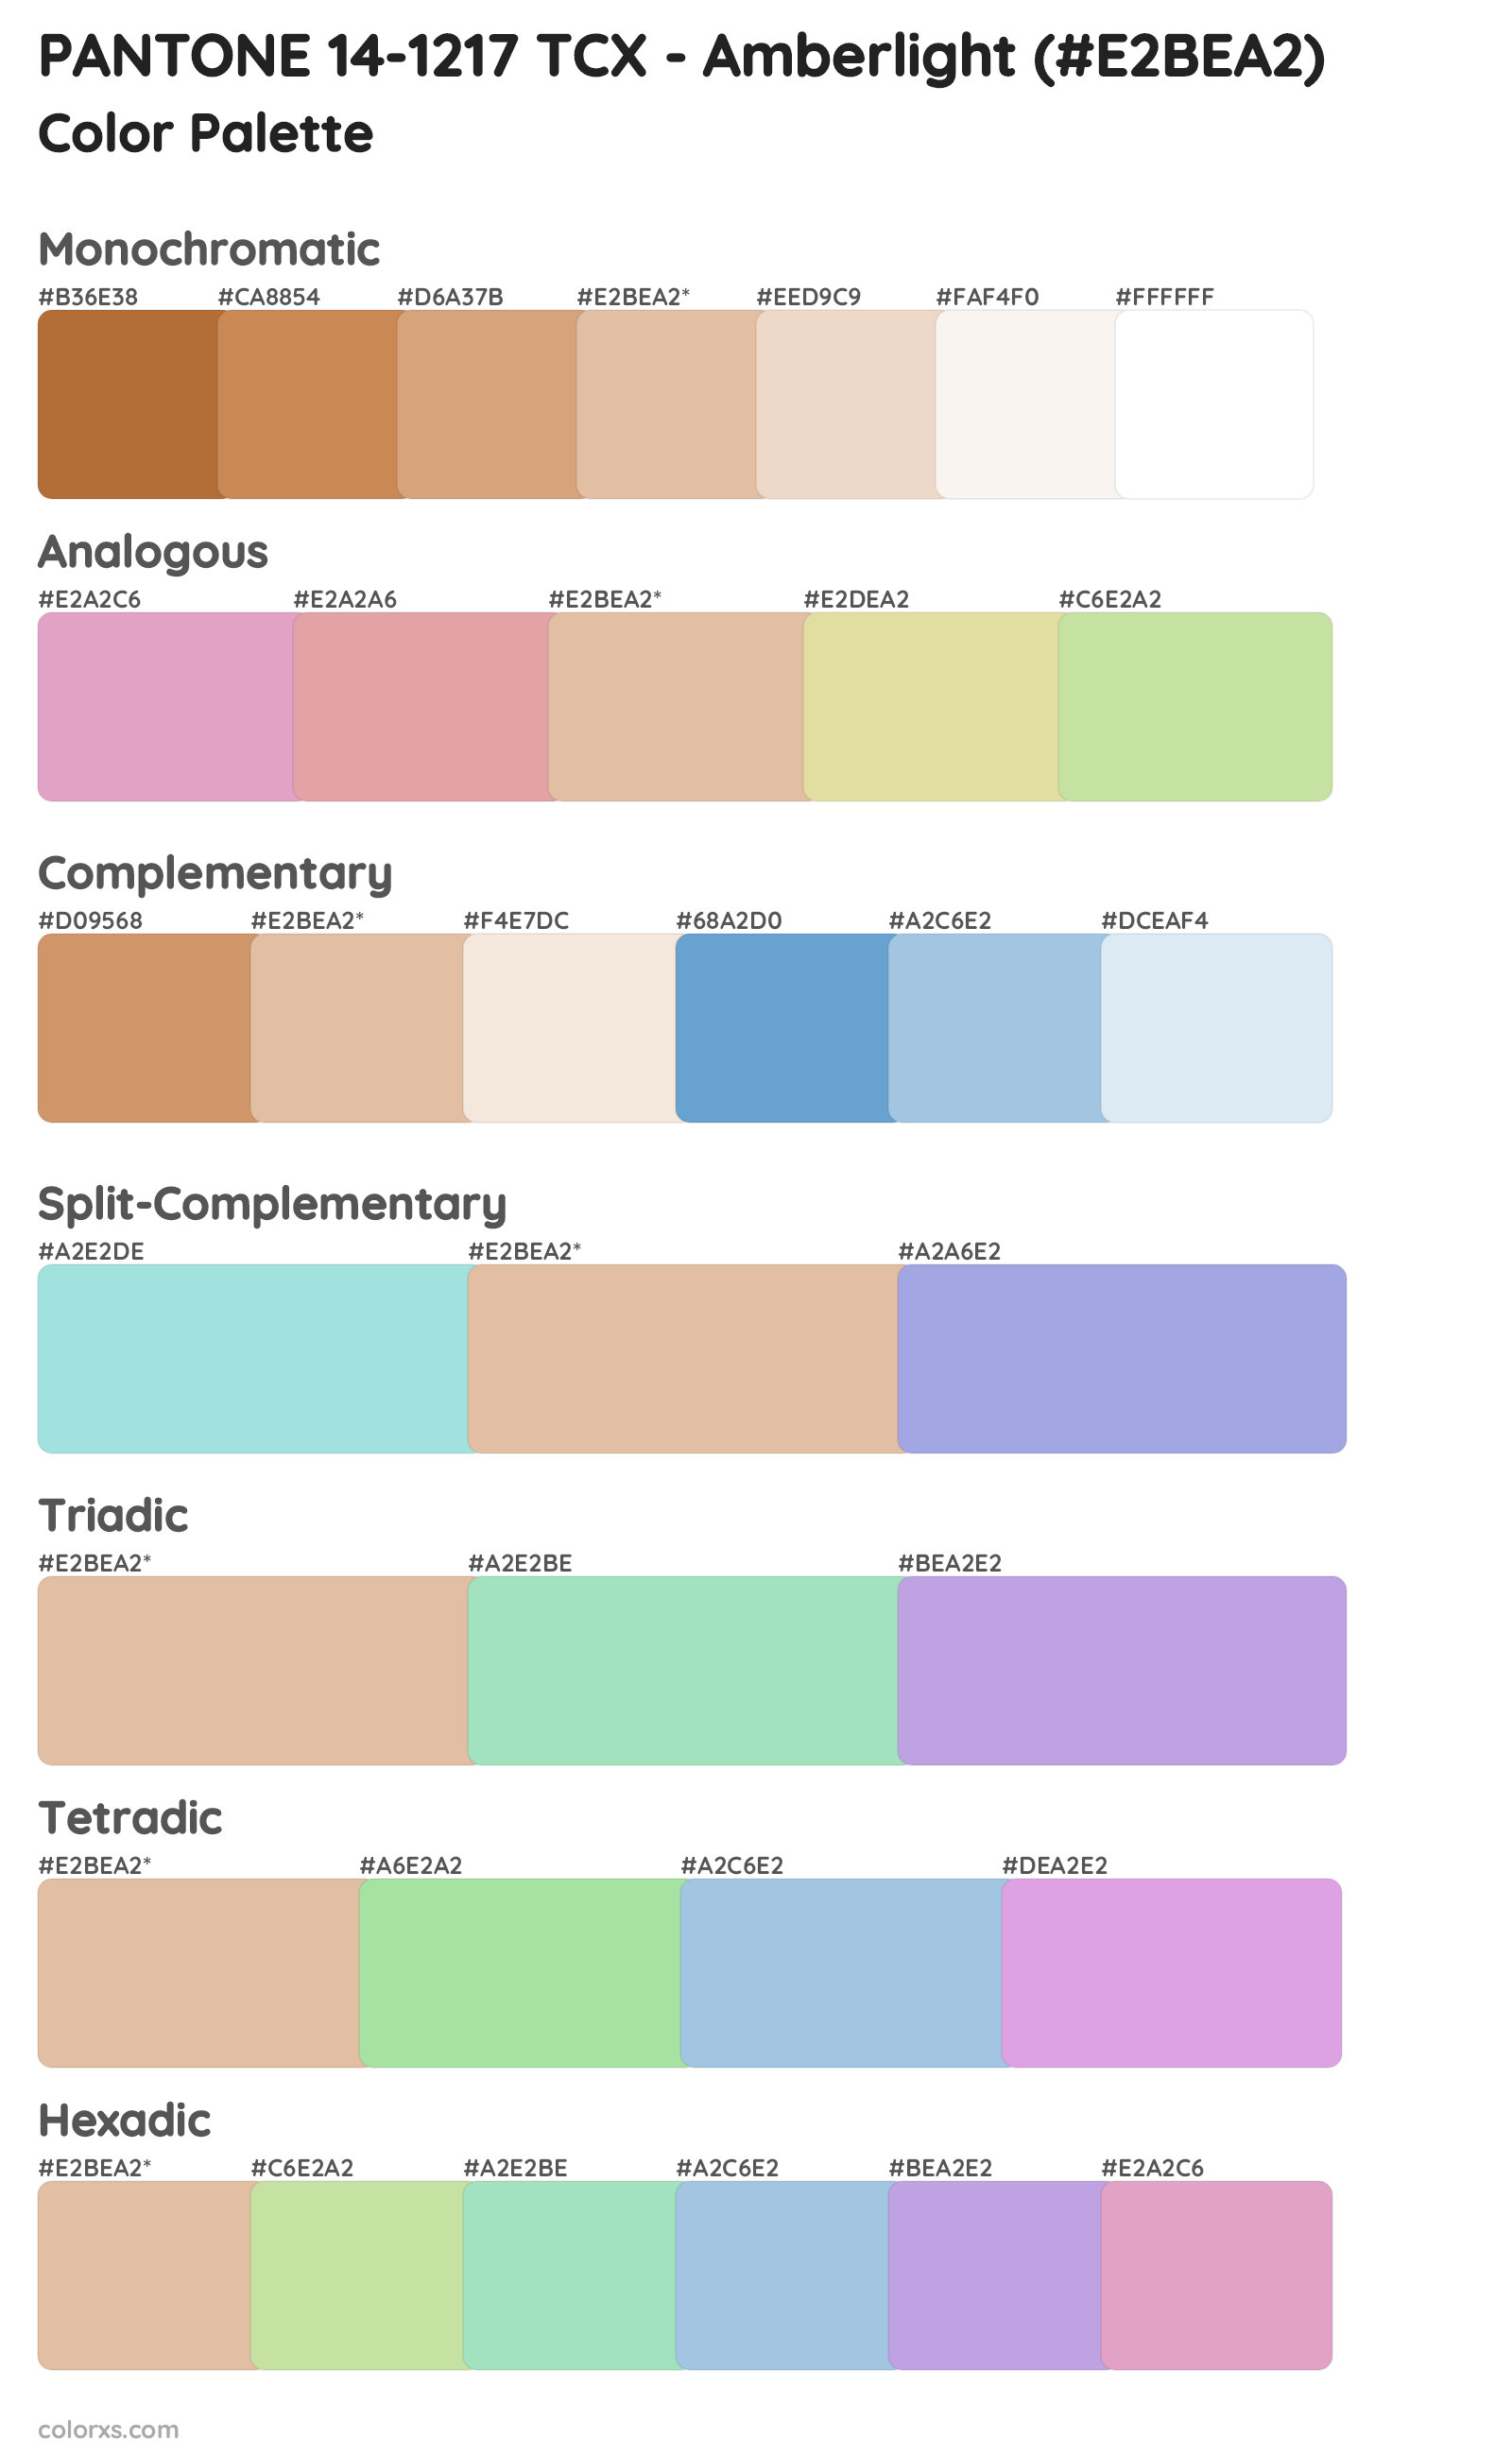 PANTONE 14-1217 TCX - Amberlight Color Scheme Palettes